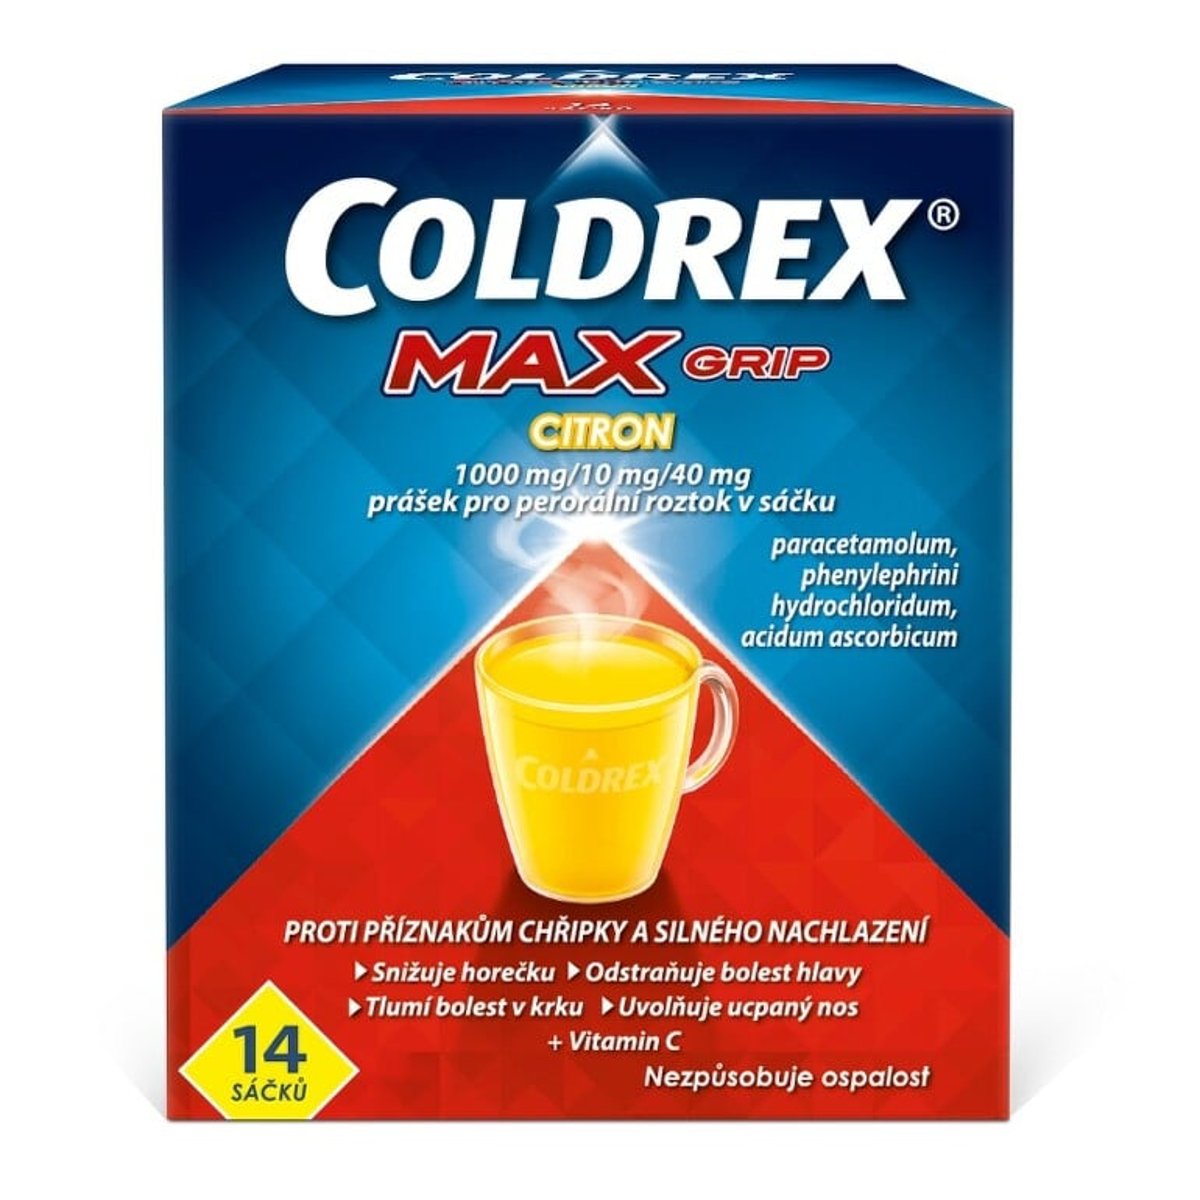 COLDREX MAXGRIP CITRON 1000MG/10MG/40MG Prášek pro perorální roztok v sáčku 14 I